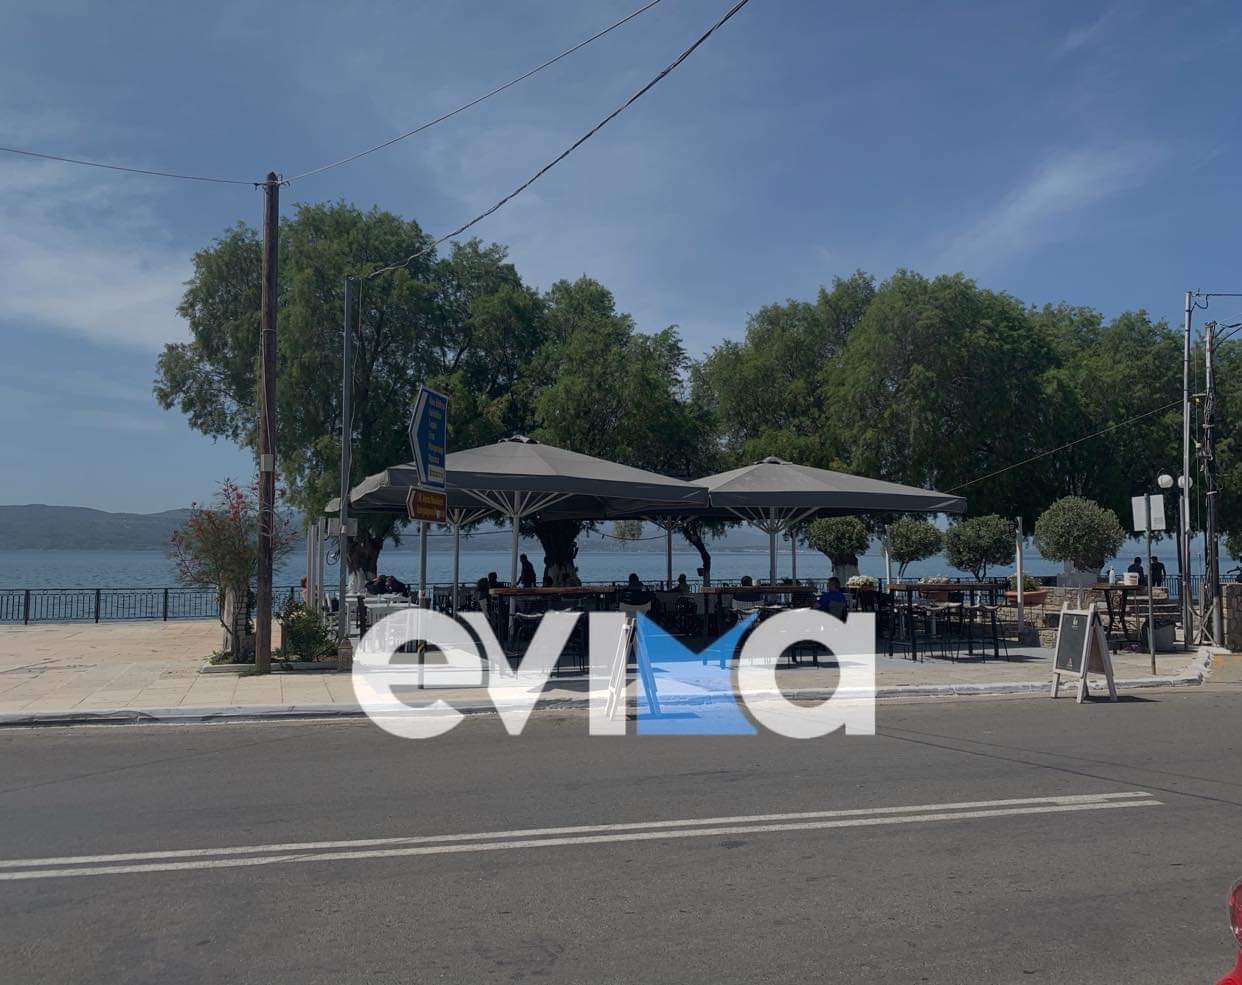 Εύβοια – Αμάρυνθος: Καφέ με θέα τον Ευβοϊκό κόλπο και με μέτρα για τον κορονοϊό [εικόνες]